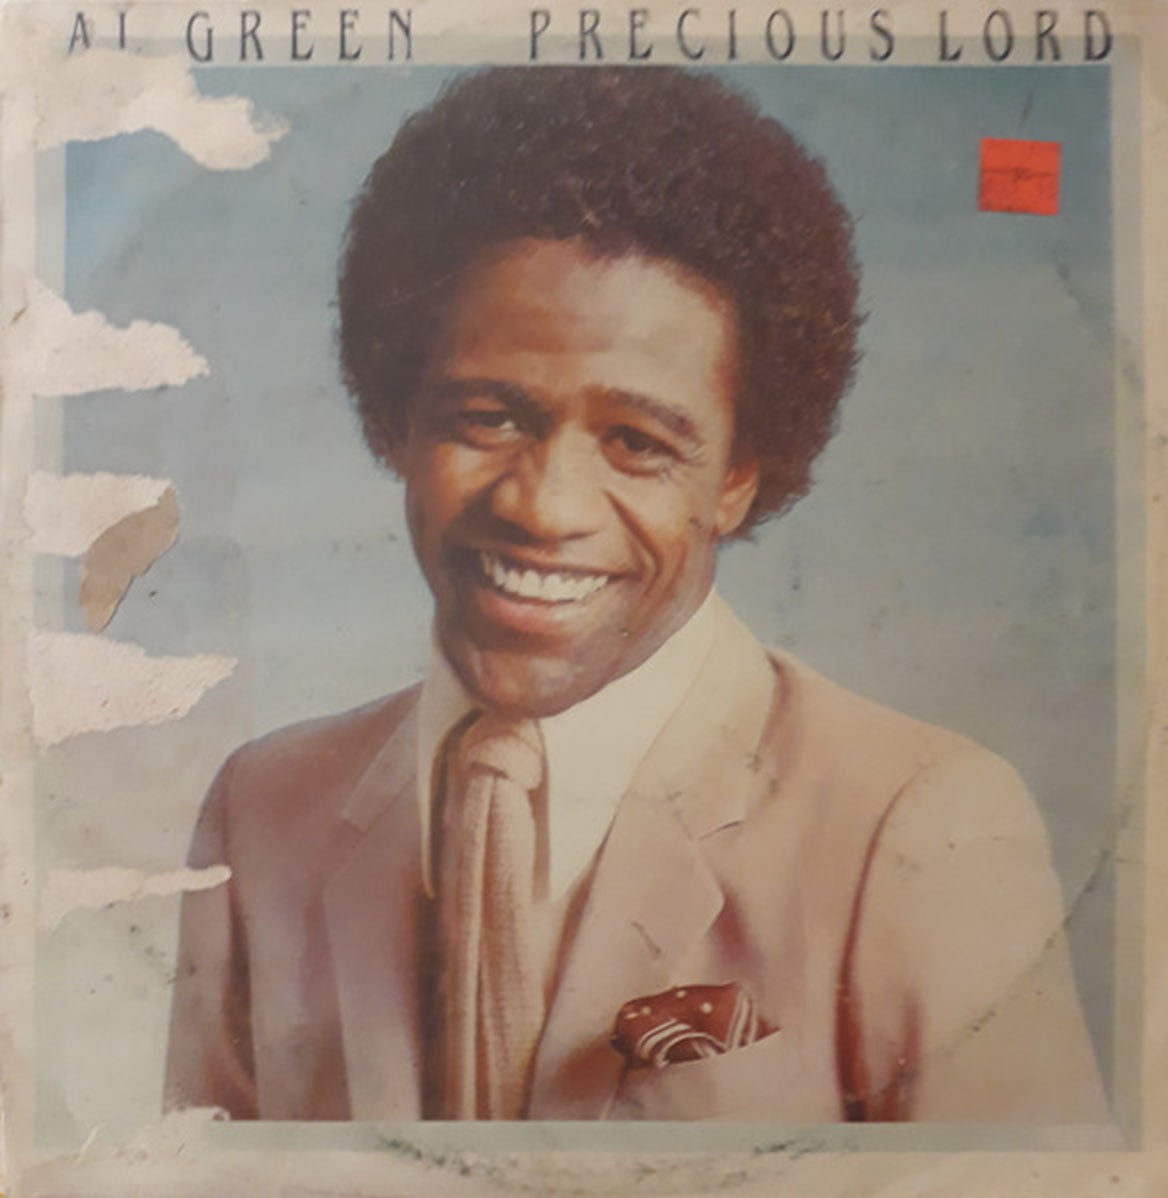 Al Green – Precious Lord - Barbados Pressing